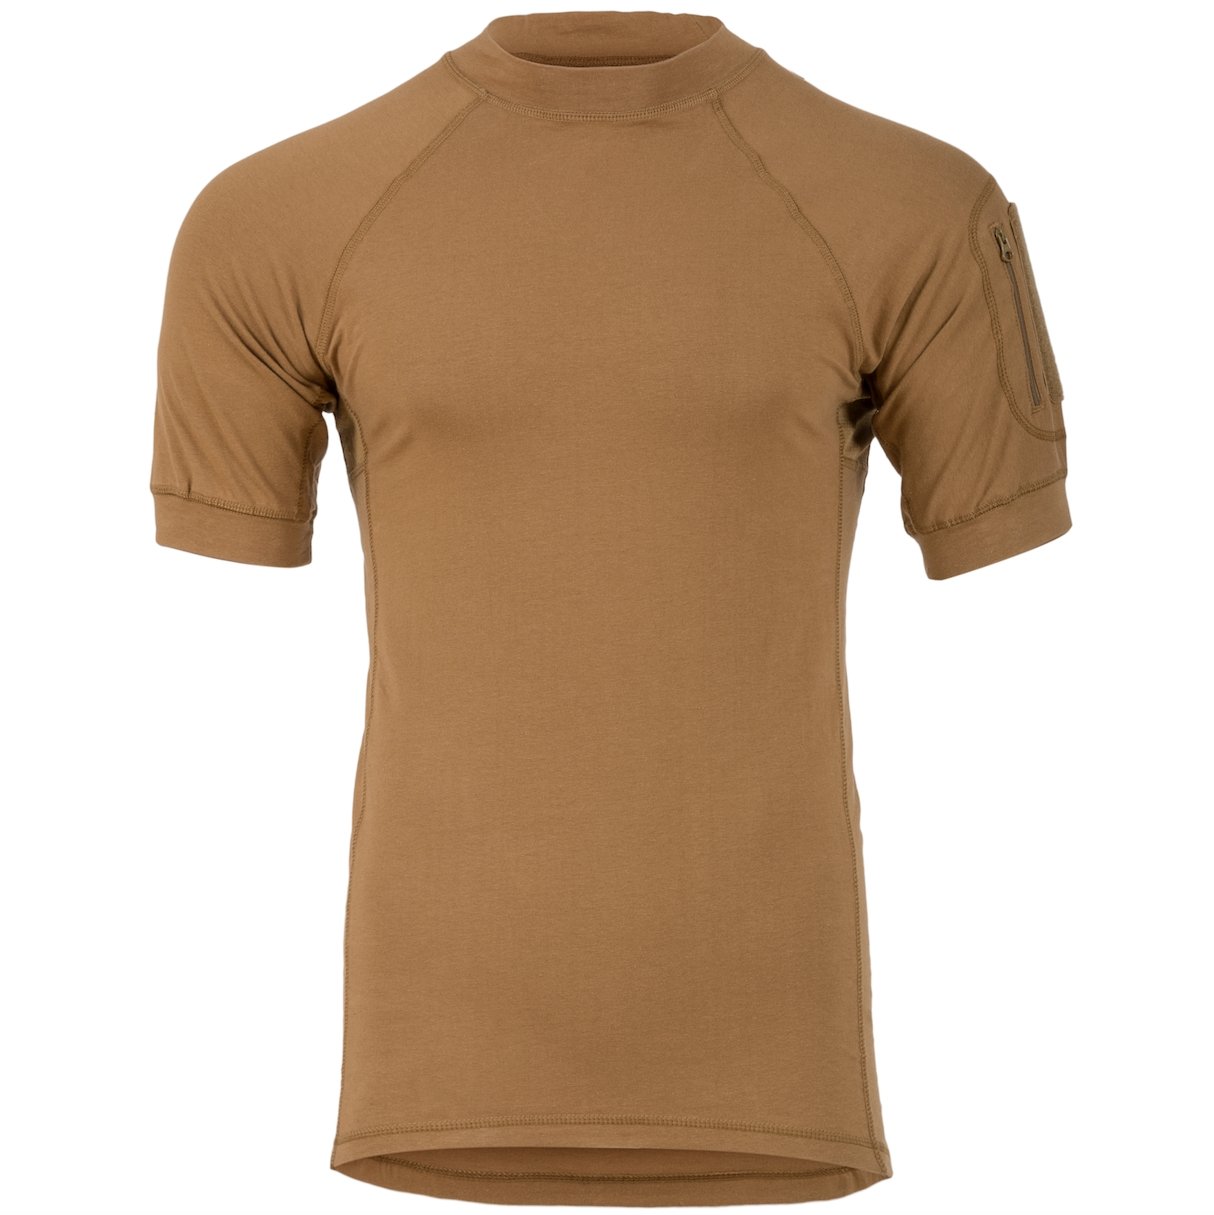 Highlander Combat T-Shirt Men's Coyote Tan